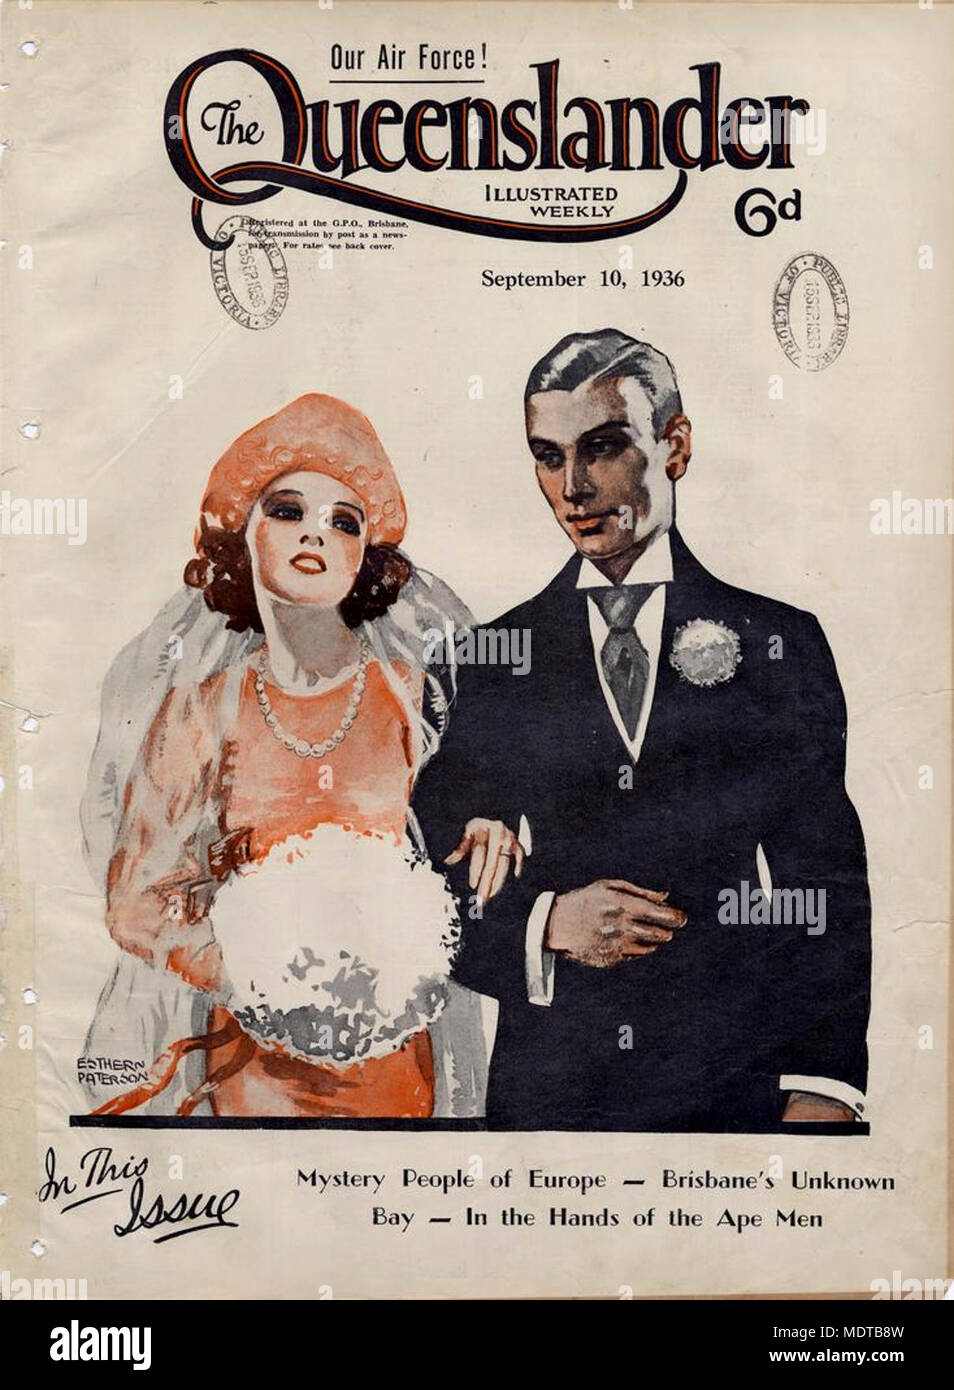 Illustriert die vordere Abdeckung von der Queenslander, September 10, 1936. Ort: Queensland, Australien Beschreibung: farbige Zeichnung von Esther Paterson, einem jungen Paar, entweder heiraten oder nur verheiratet. Stockfoto